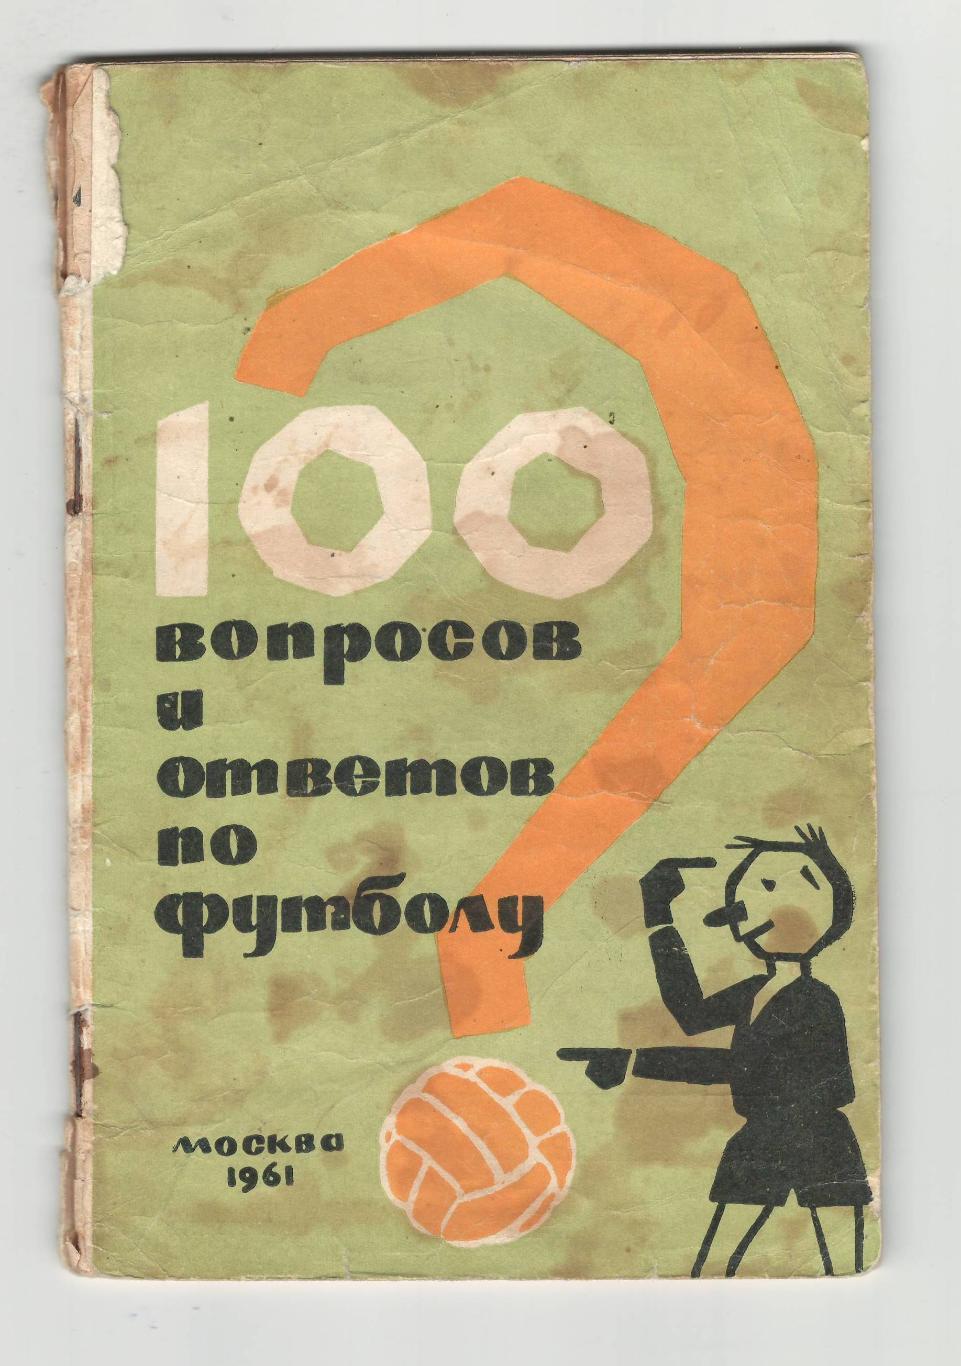 Сто вопросов и ответов по футболу.1961 г